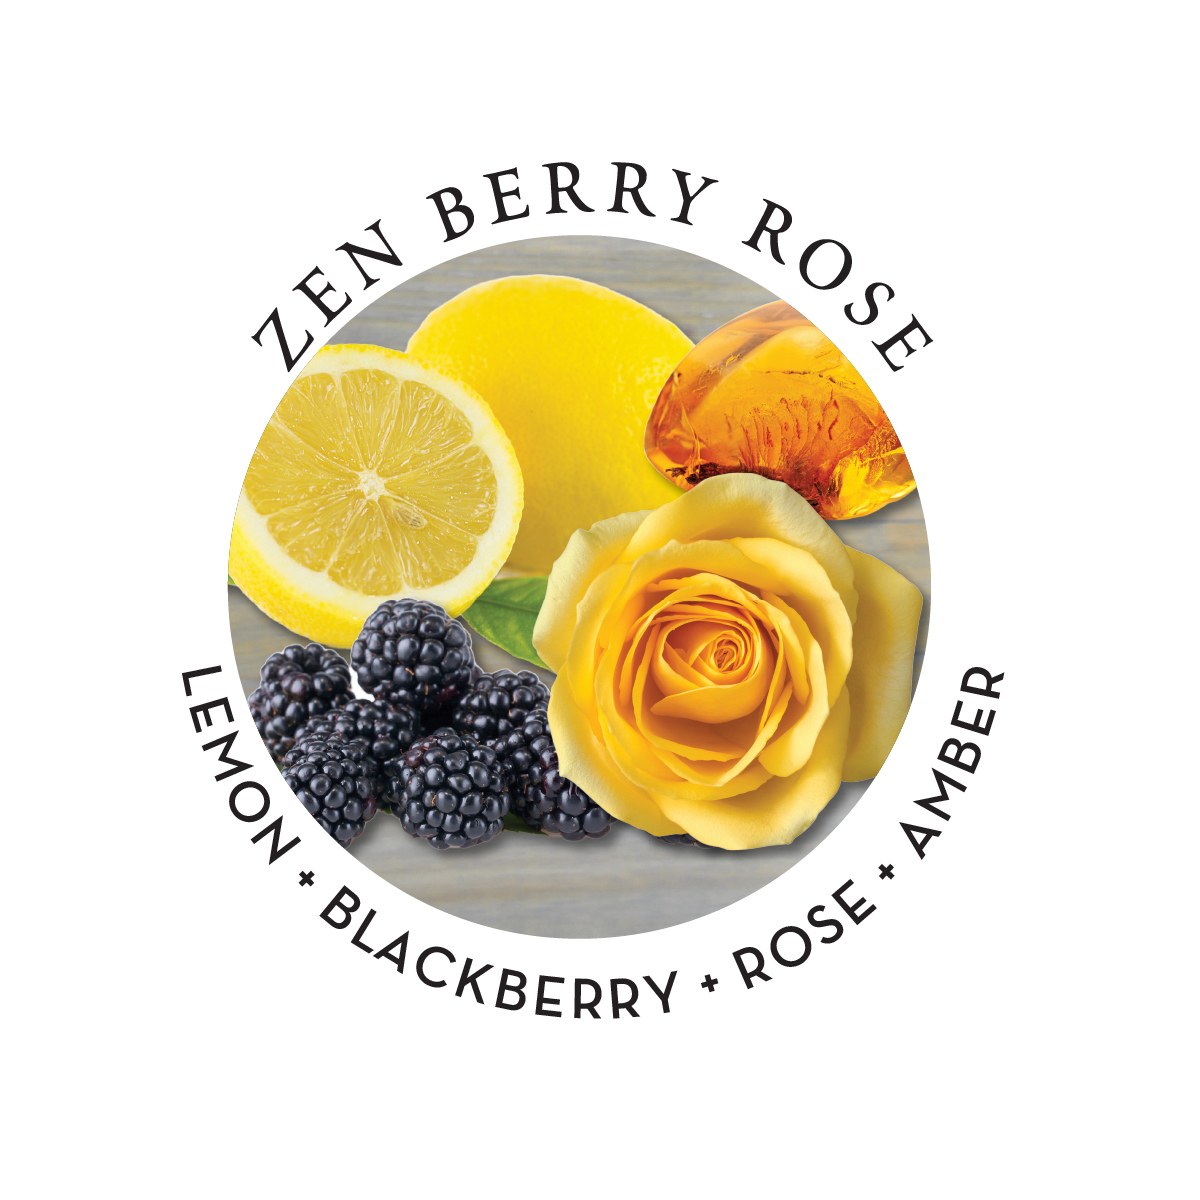 Earthly Body Hemp Seed Massage Oil - Zen Berry Rose, 8oz/237ml